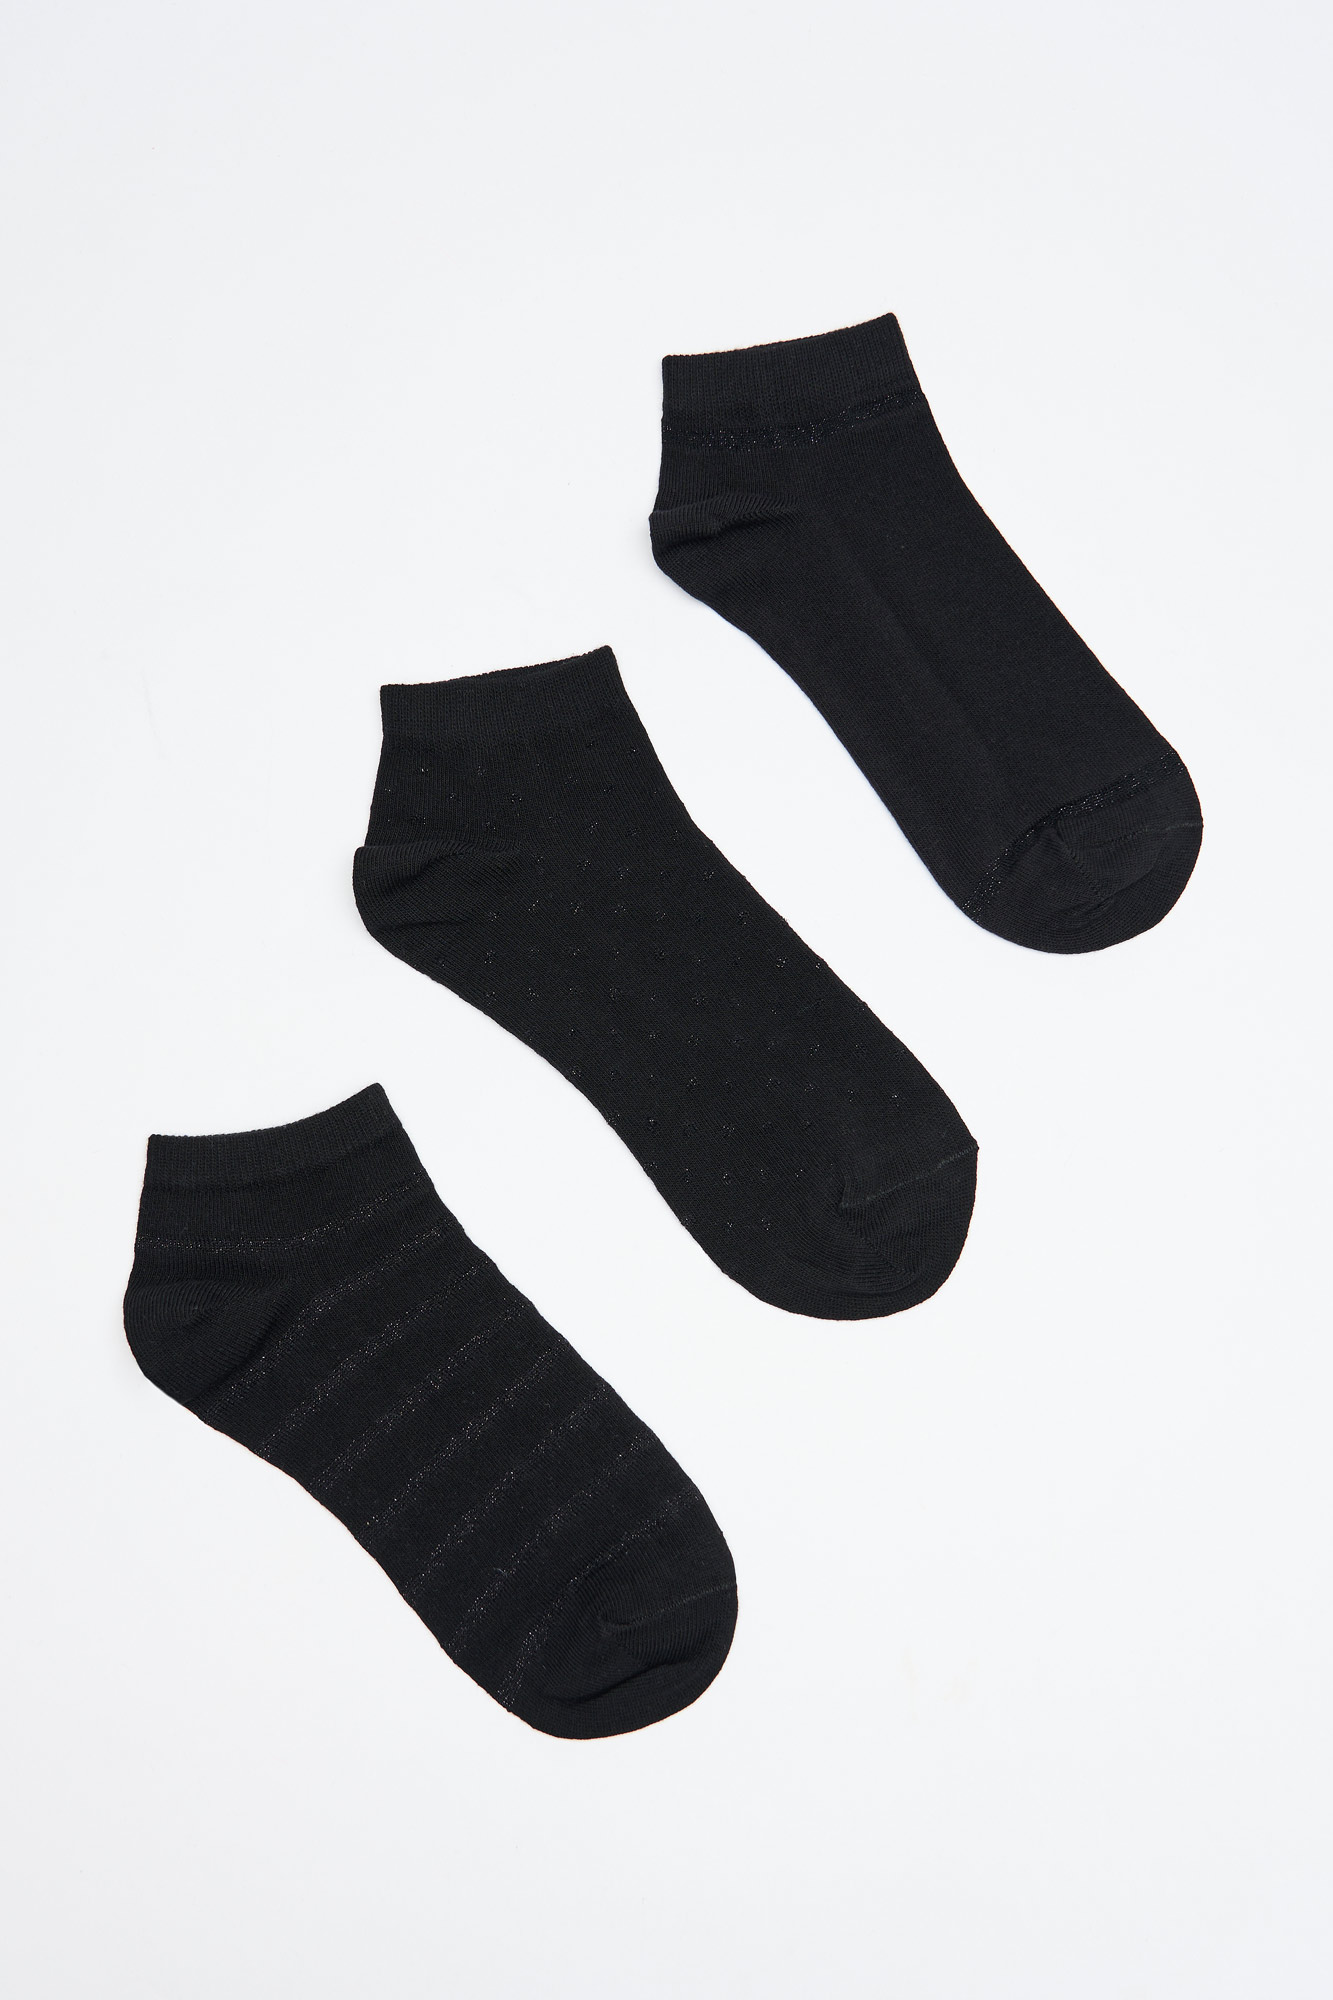 Pack de 3 calcetines de deporte DryMove™ - Negro vintage - MUJER